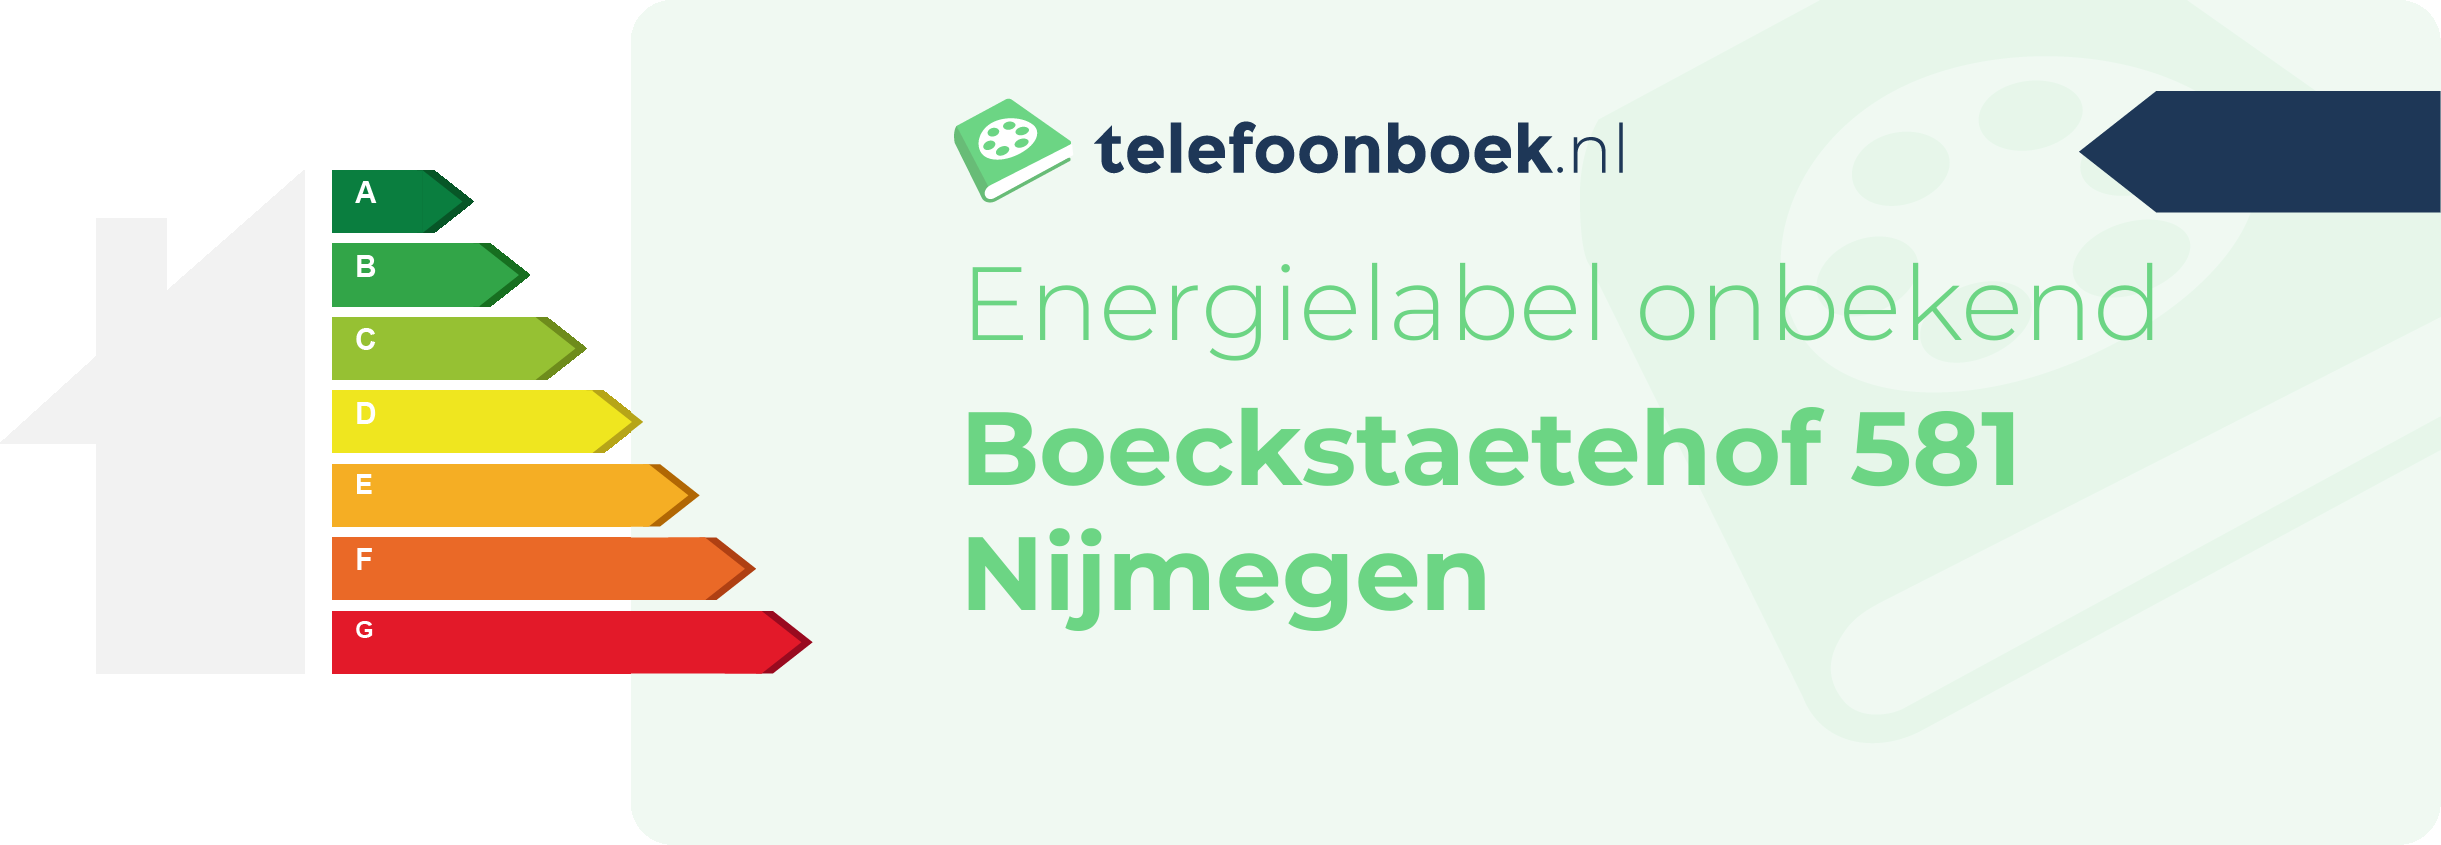 Energielabel Boeckstaetehof 581 Nijmegen